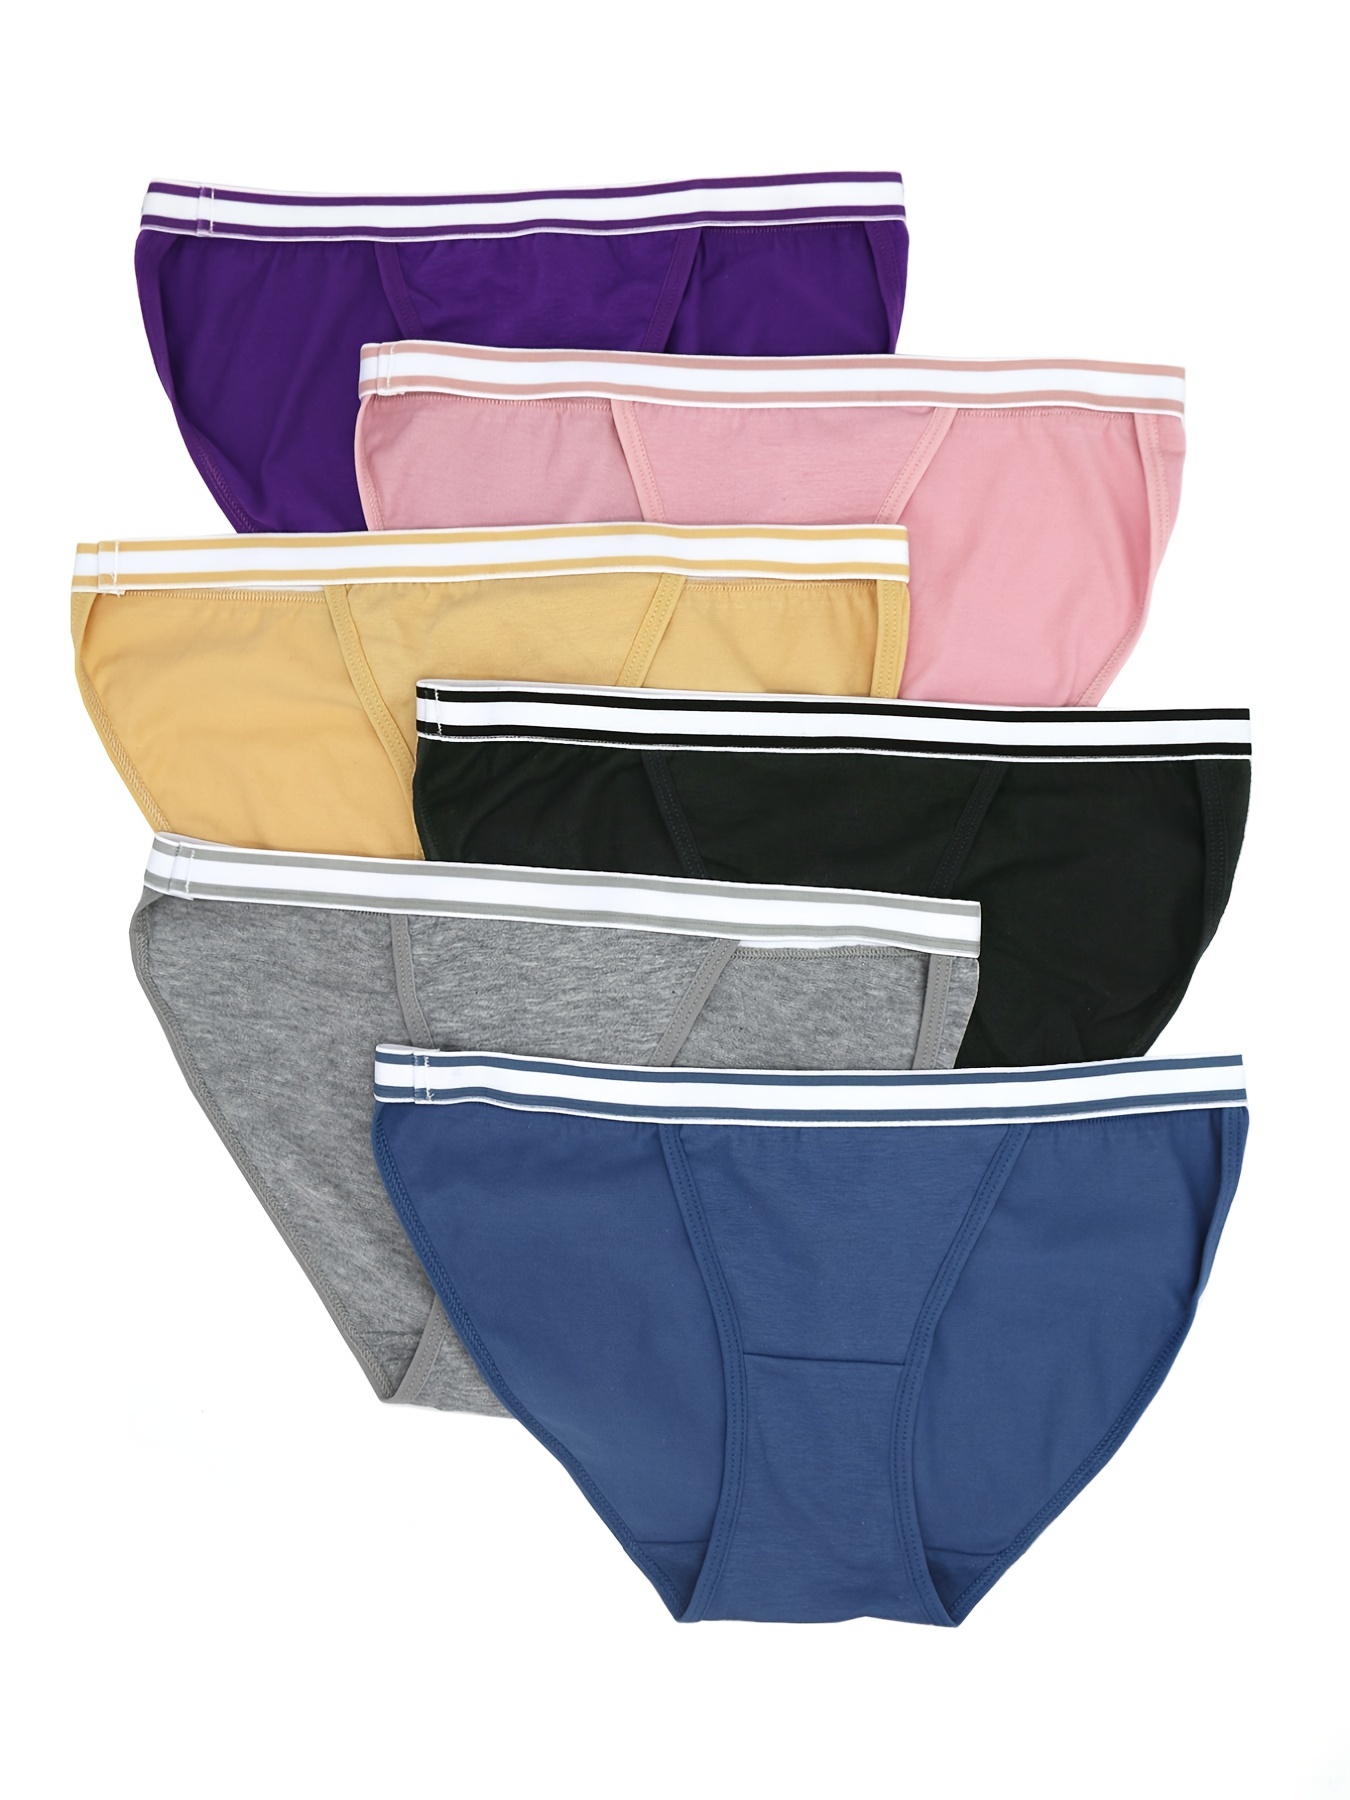 Cute Women's Panties for Men Gift Pack